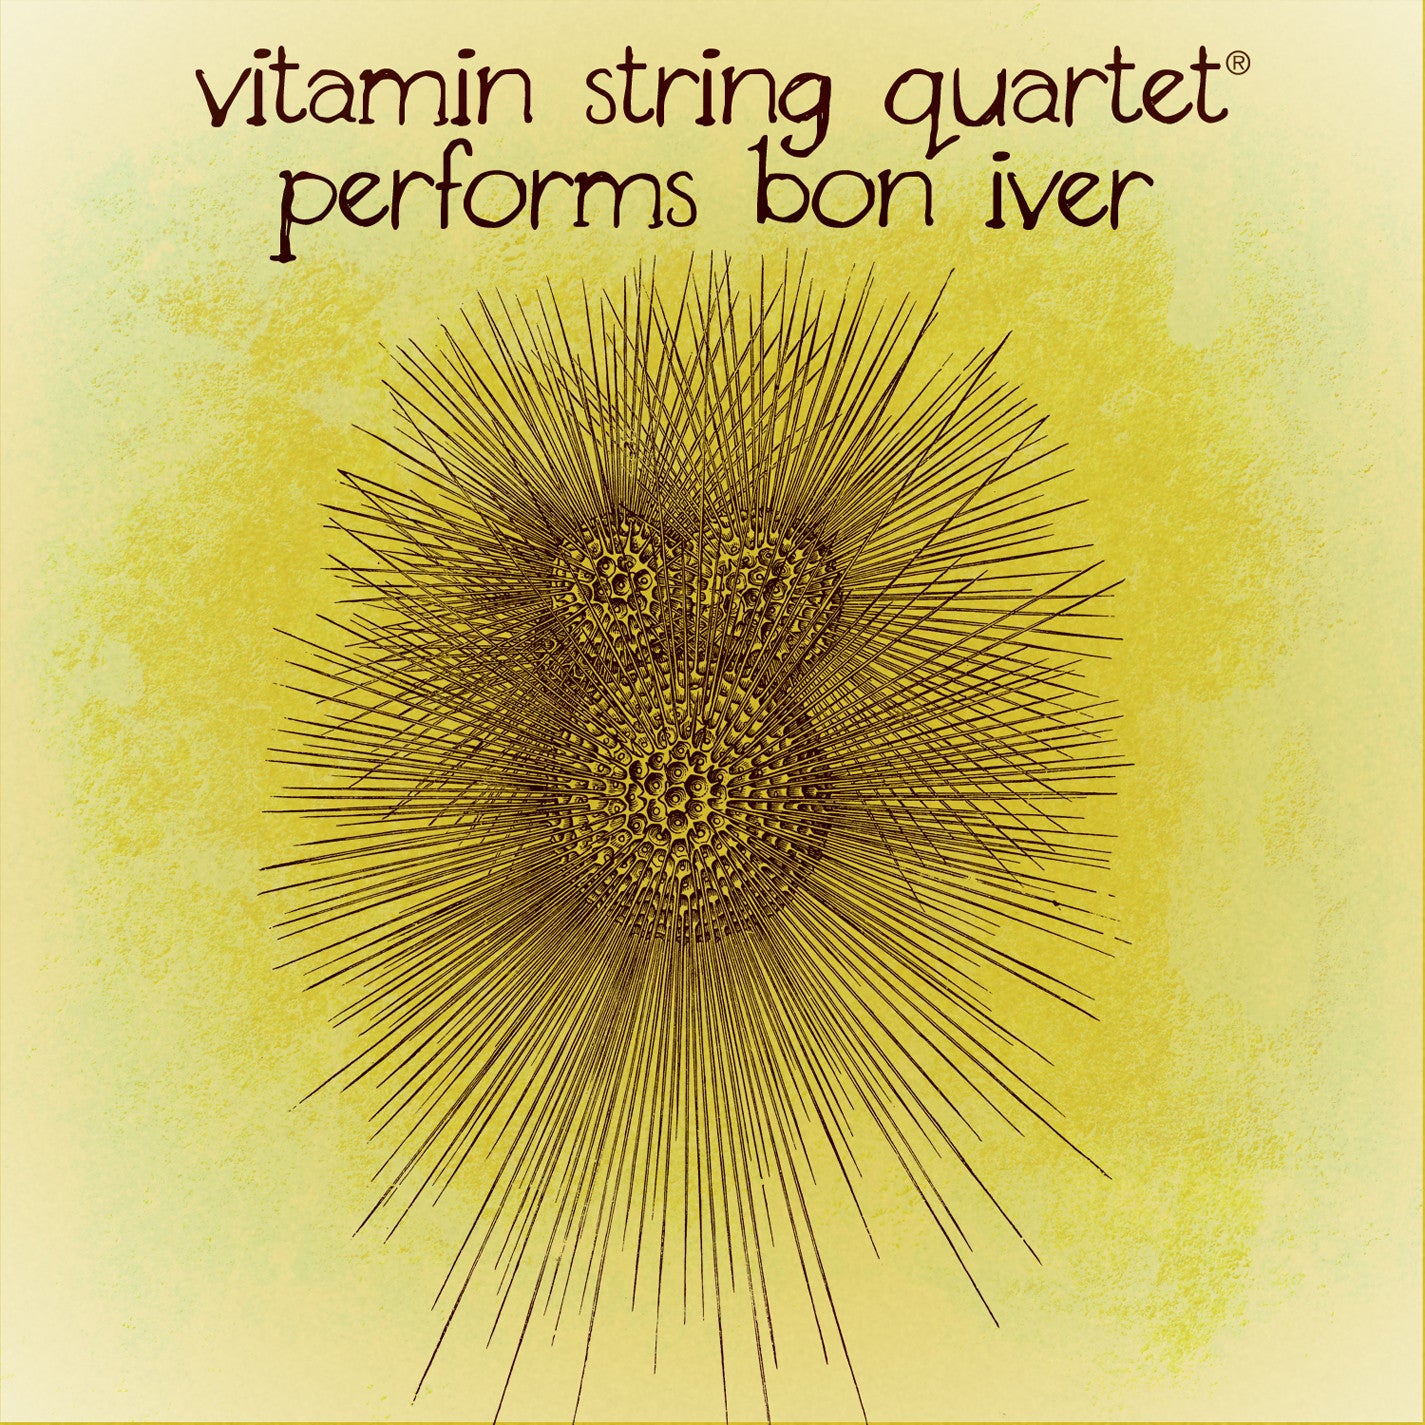 vitamin string quartet vsq bon iver tribute